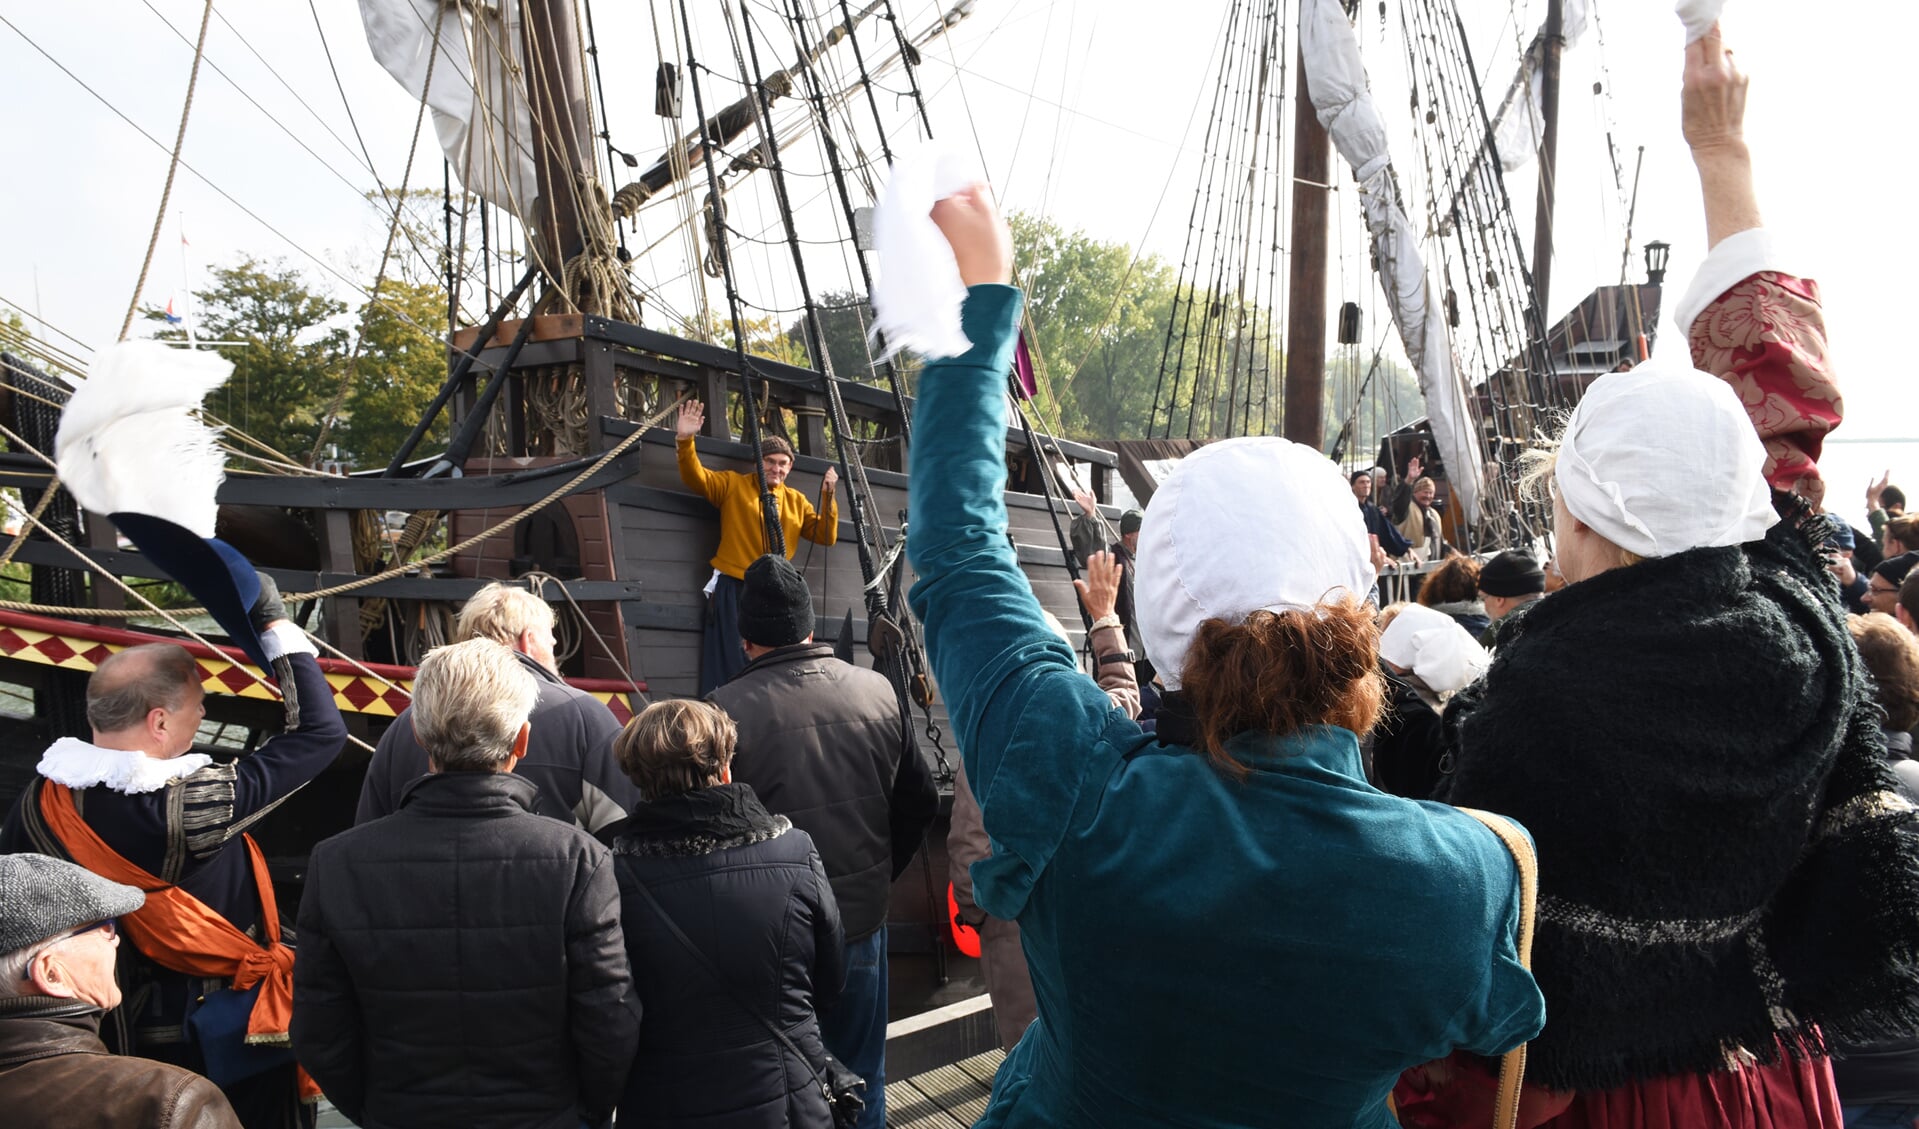 De Halve Maen maakt binnenkort een uitstapje. Het schip verlaat haar vaste standplaats Hoorn voor een bezoek aan Enkhuizen. (Foto: aangeleverd)